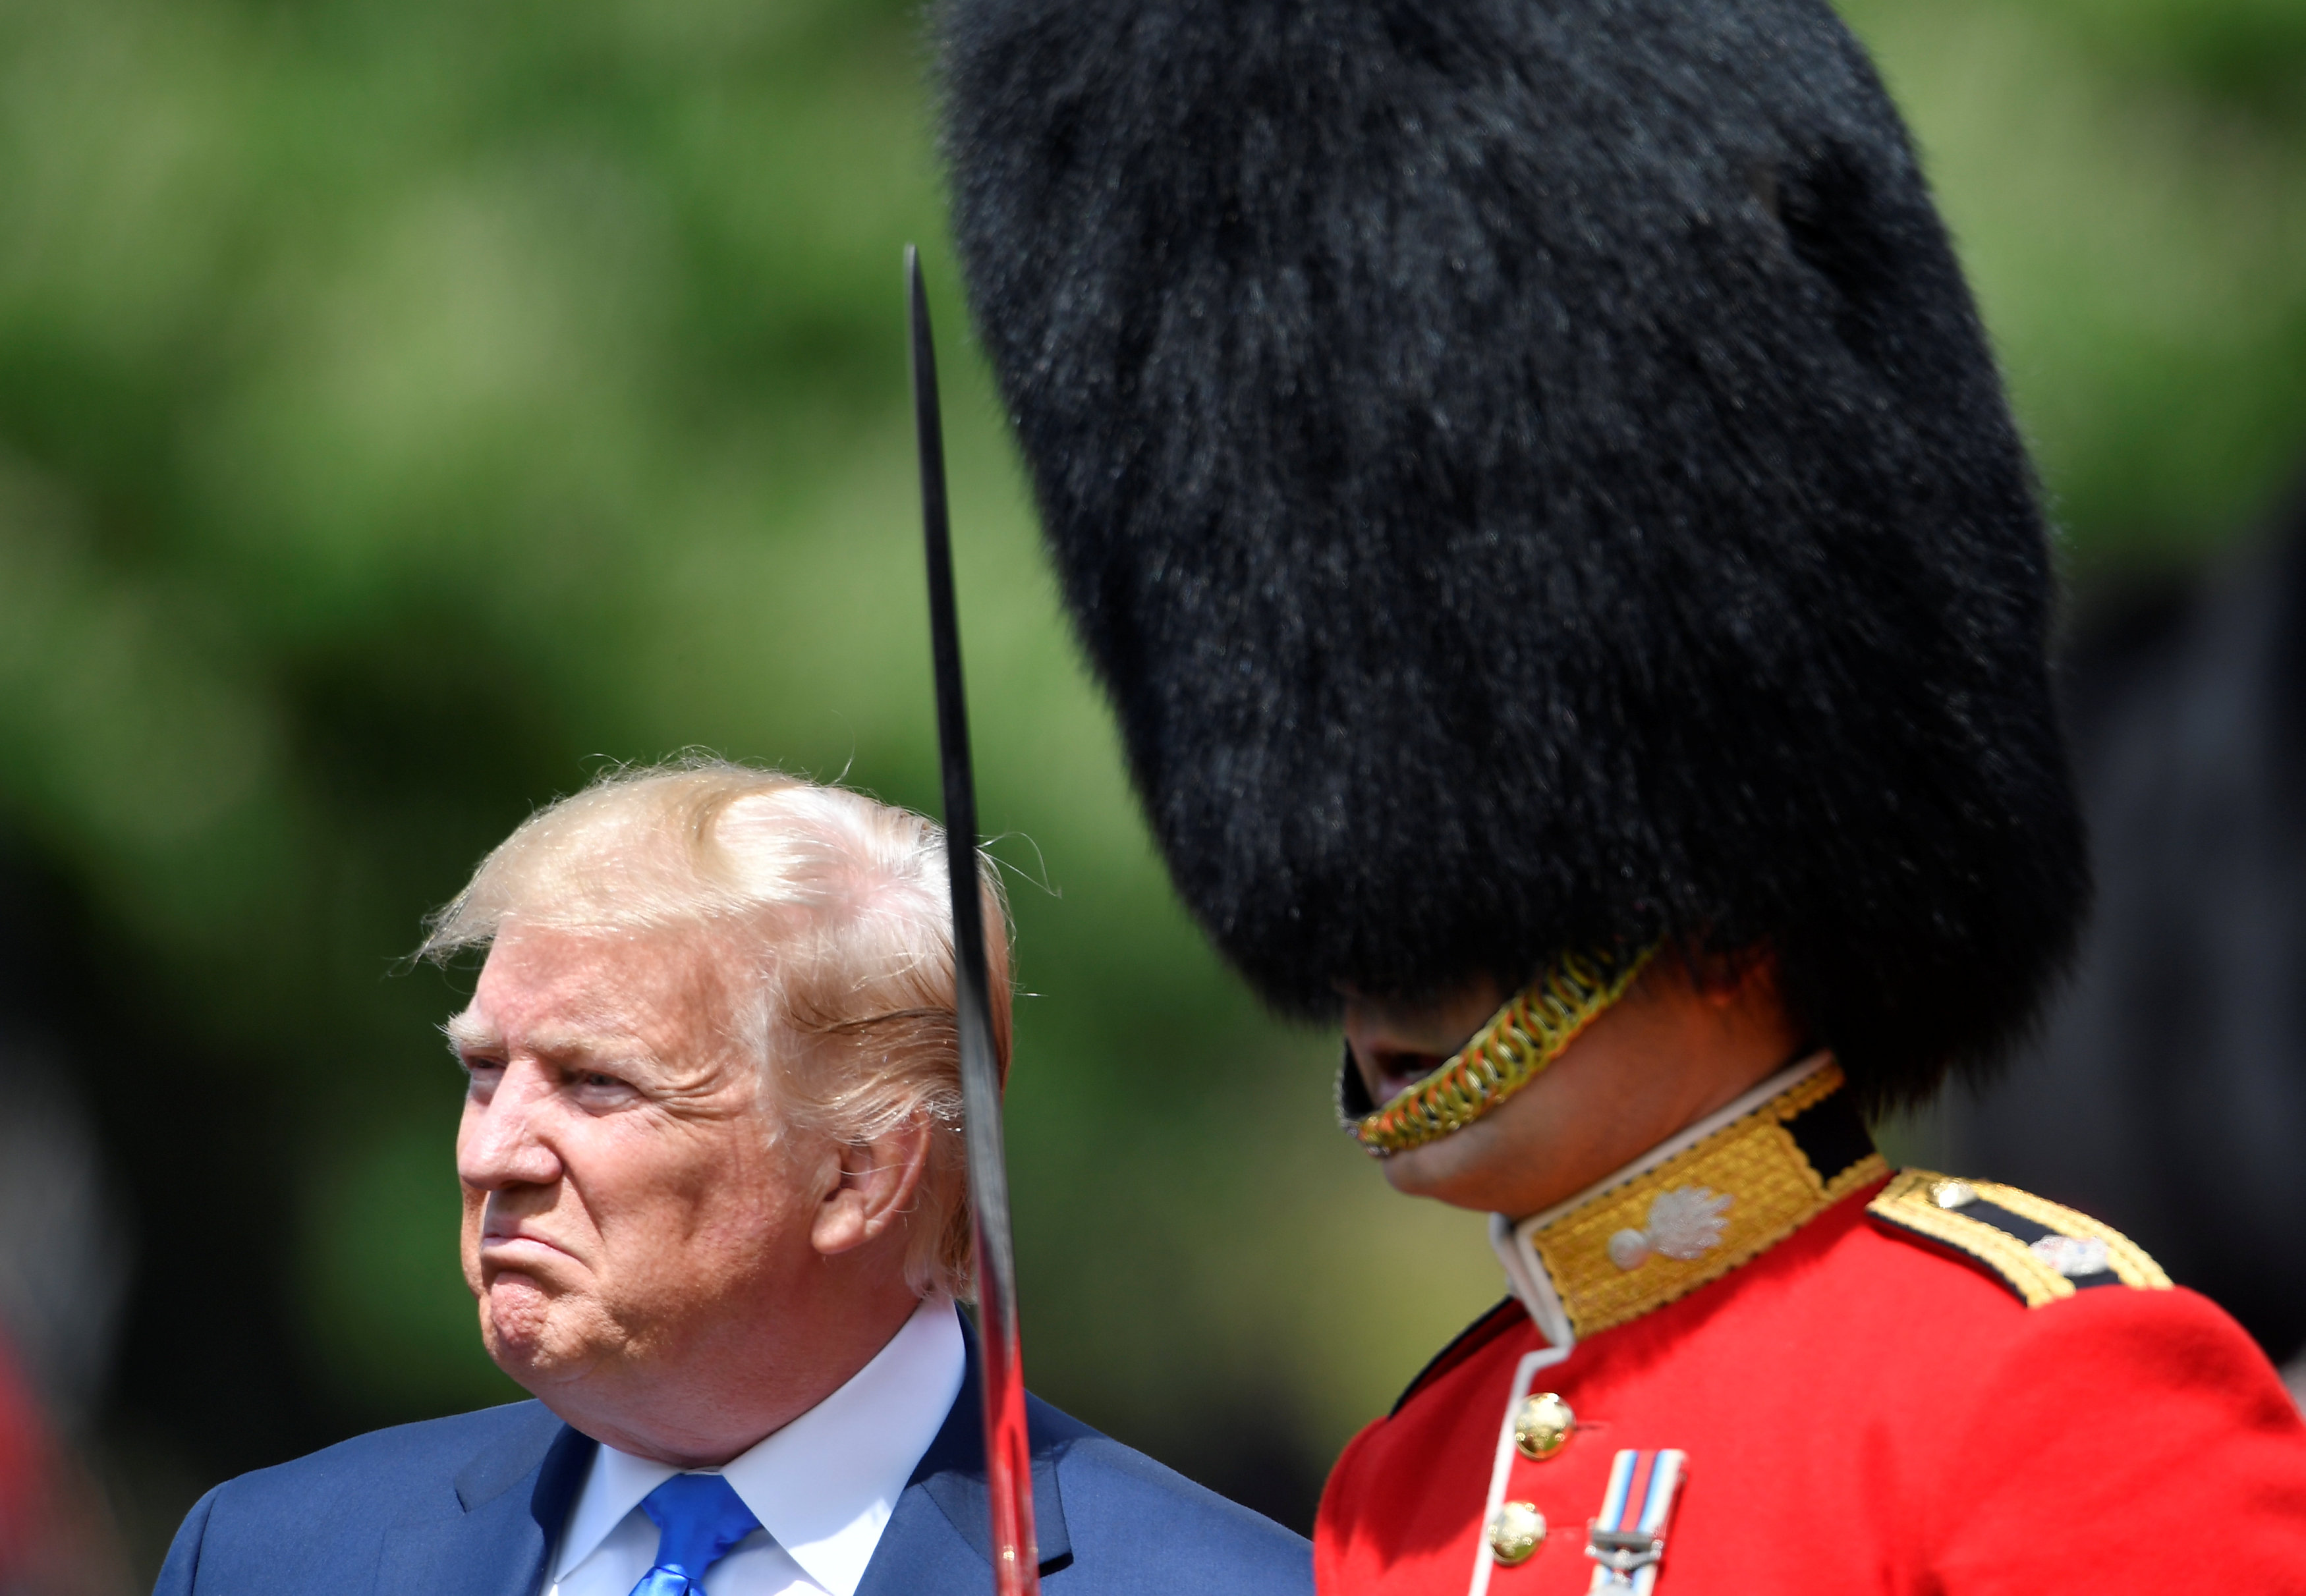 Elkészültek a sajtótörténet első olyan képei, ahol nem Donald Trumpnak van a legfeltűnőbb haja